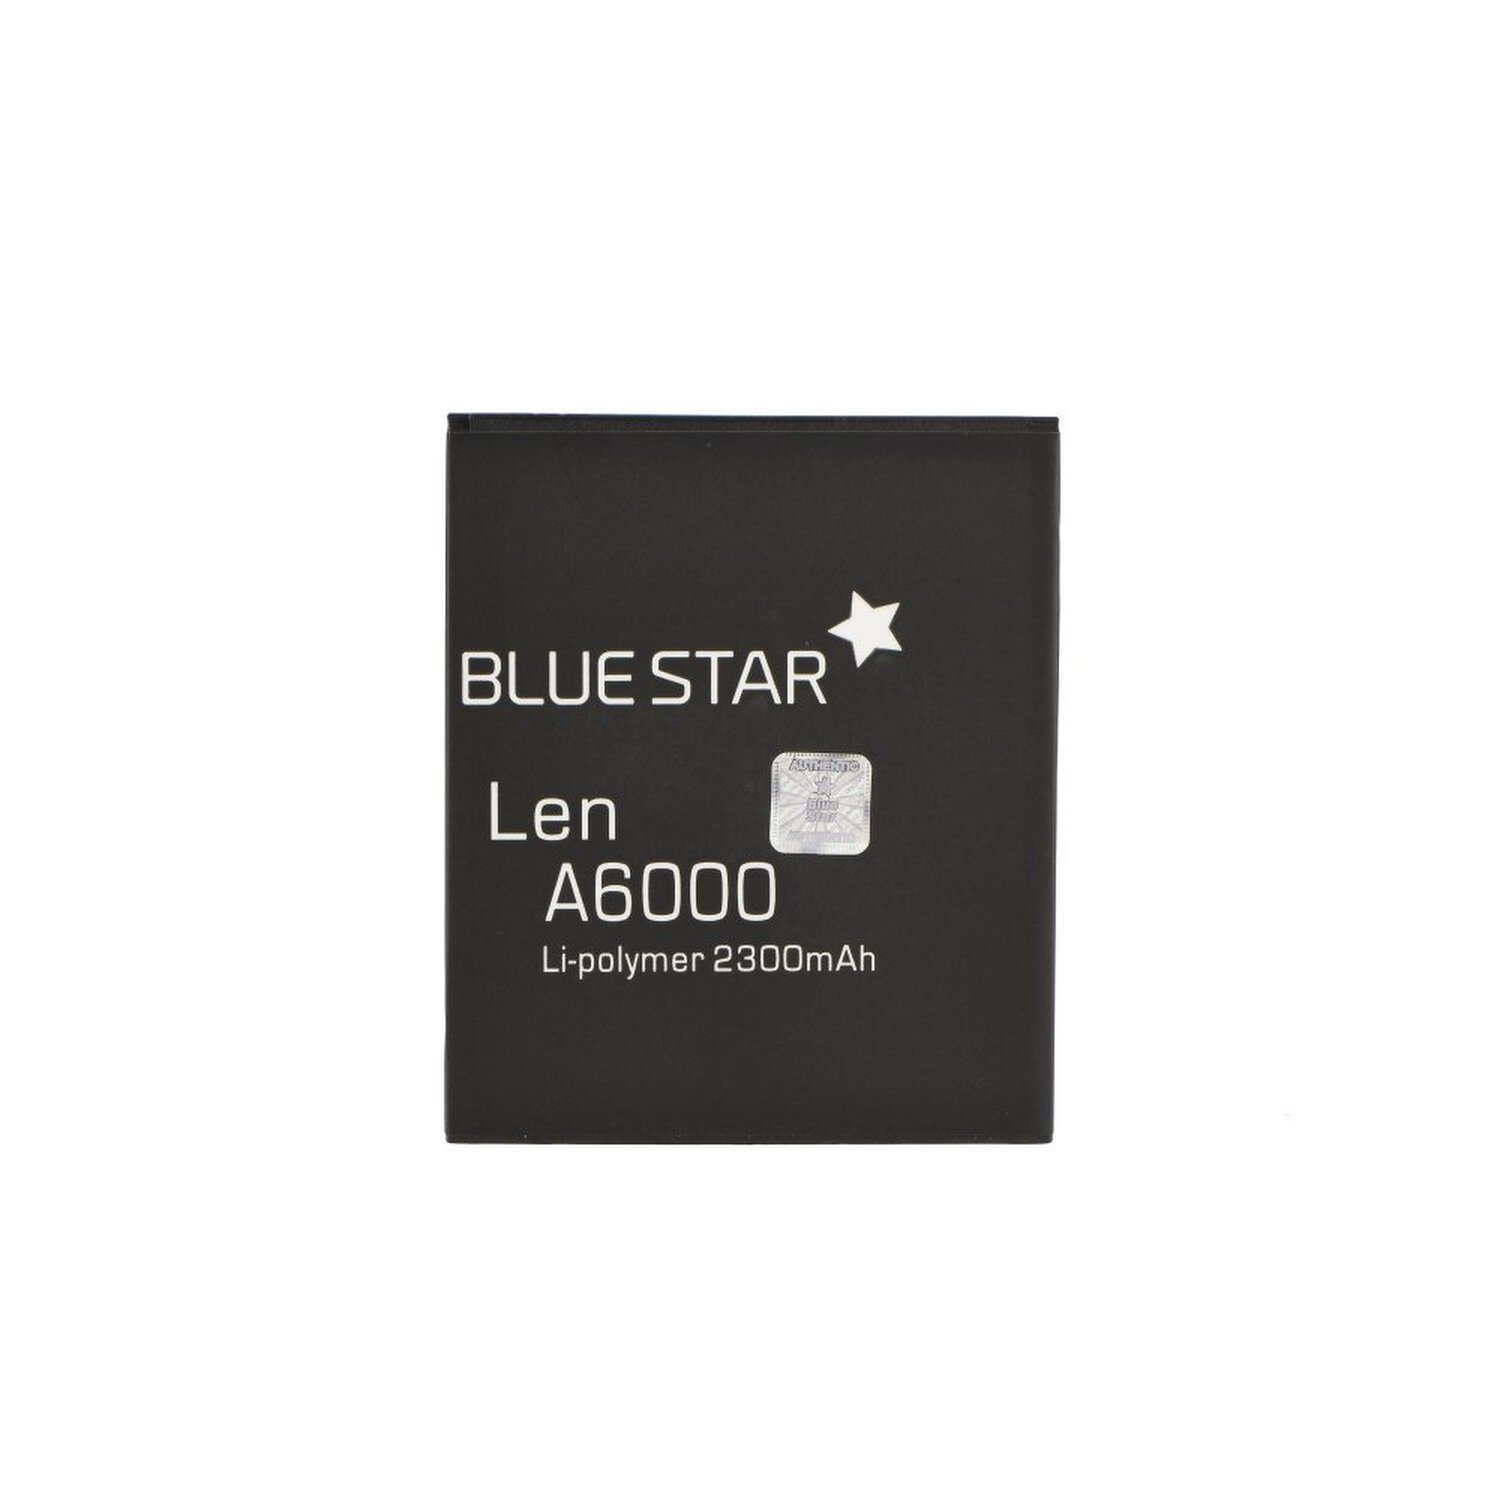 BLUESTAR Akku für Lenovo Dual Li-Ion / A6000 Lemeng A6010 Handyakku Sim